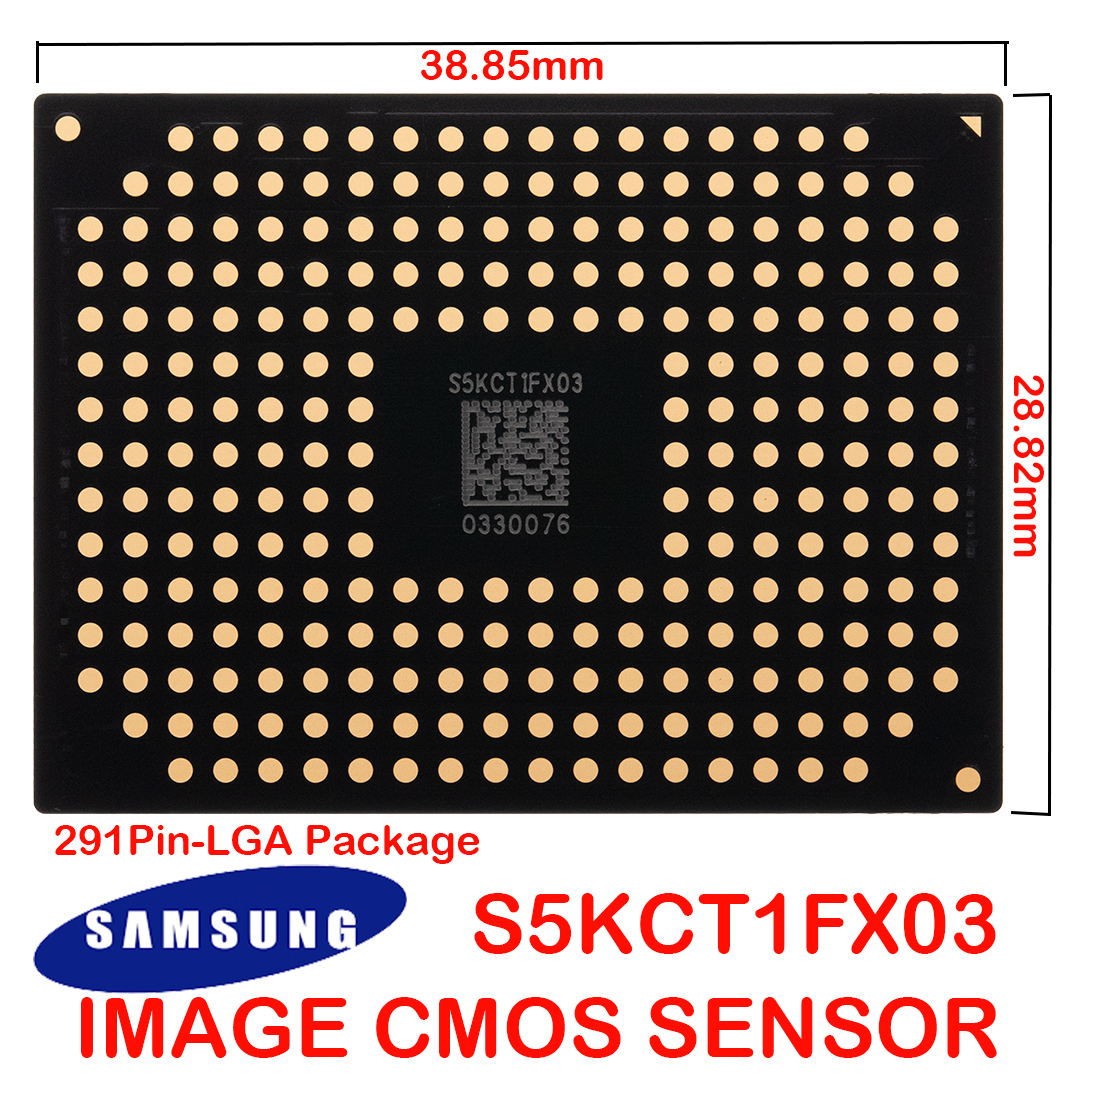  三星1.11英寸残幅CMOS图像传感器